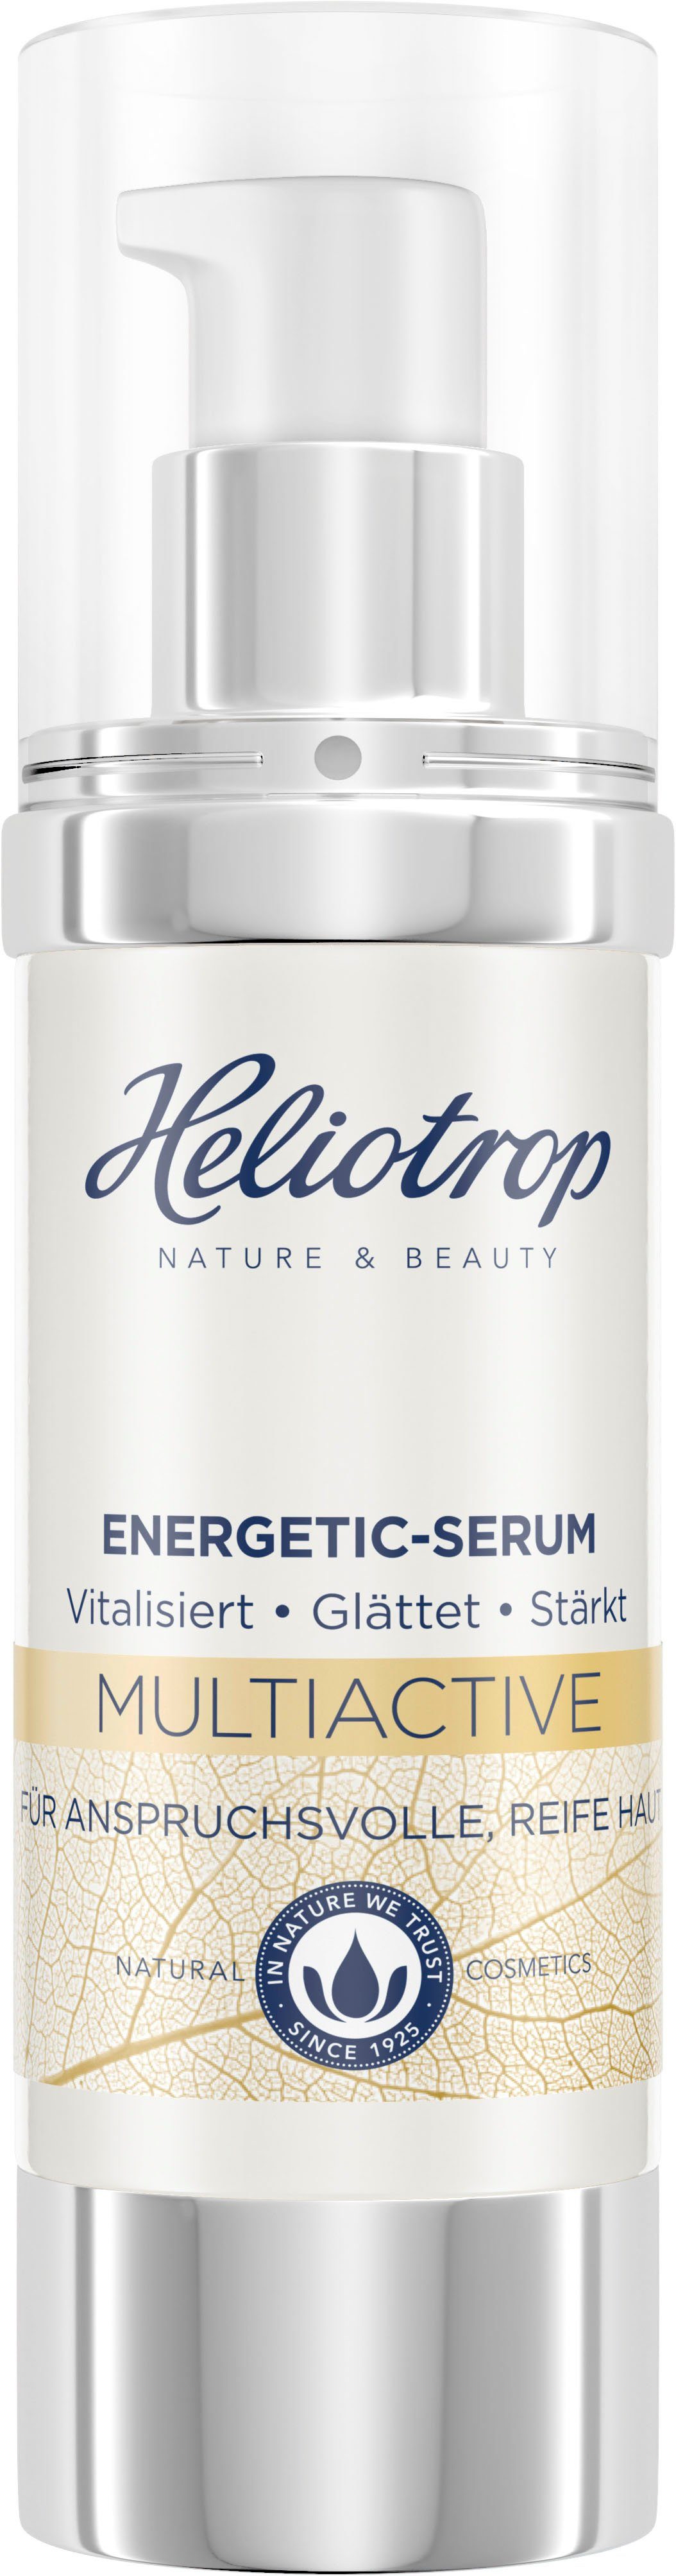 HELIOTROP Gesichtsserum Multiactive Energetic-Serum, Mit Macadamianussöl,  Bio-Melissenextrakt und Shitake-Extrakt